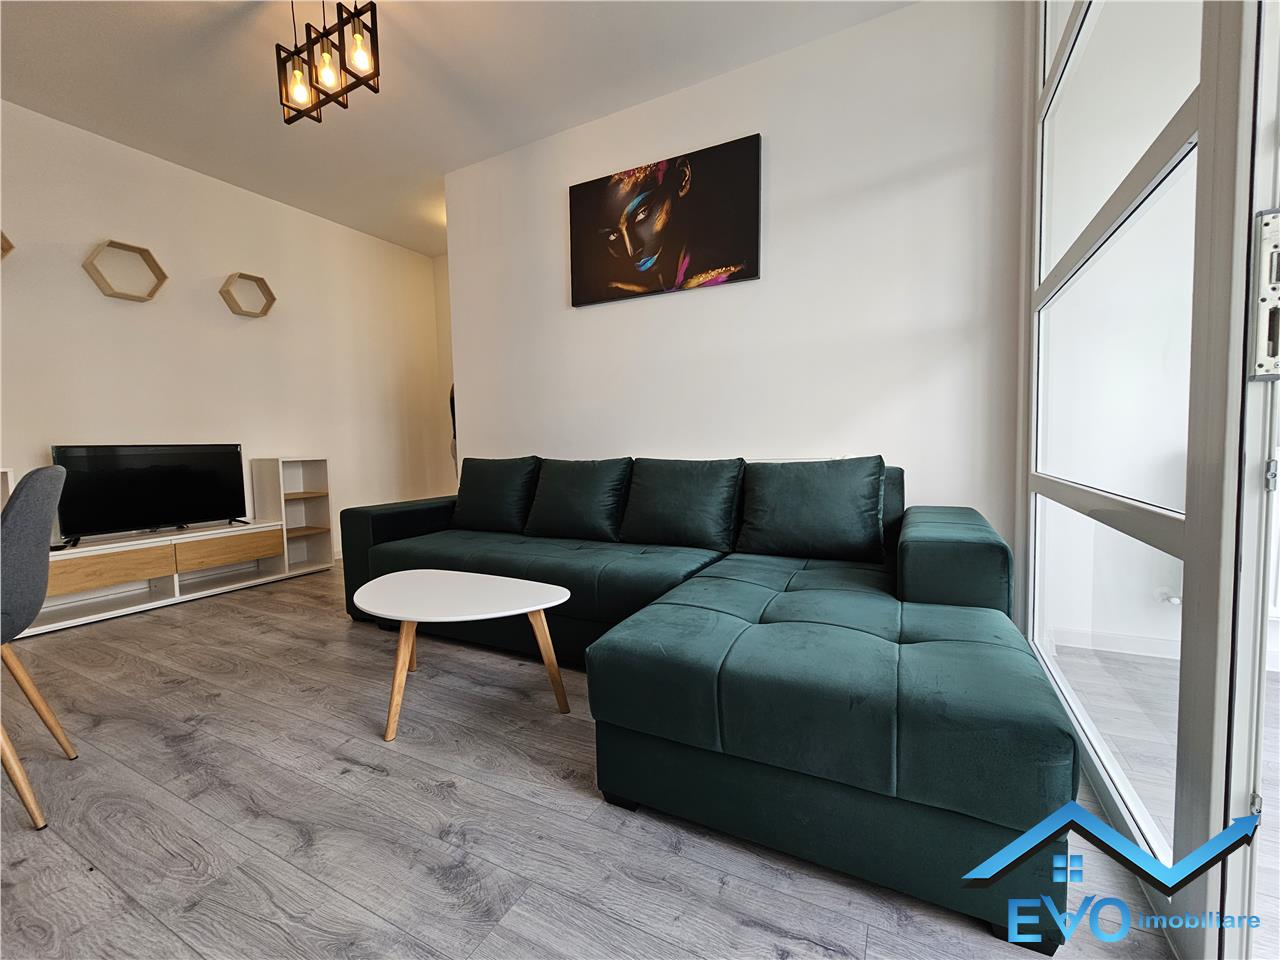 De inchiriat apartament nou cu 2 camere, la prima inchiriere, mobilat si utilat, in Visoianu